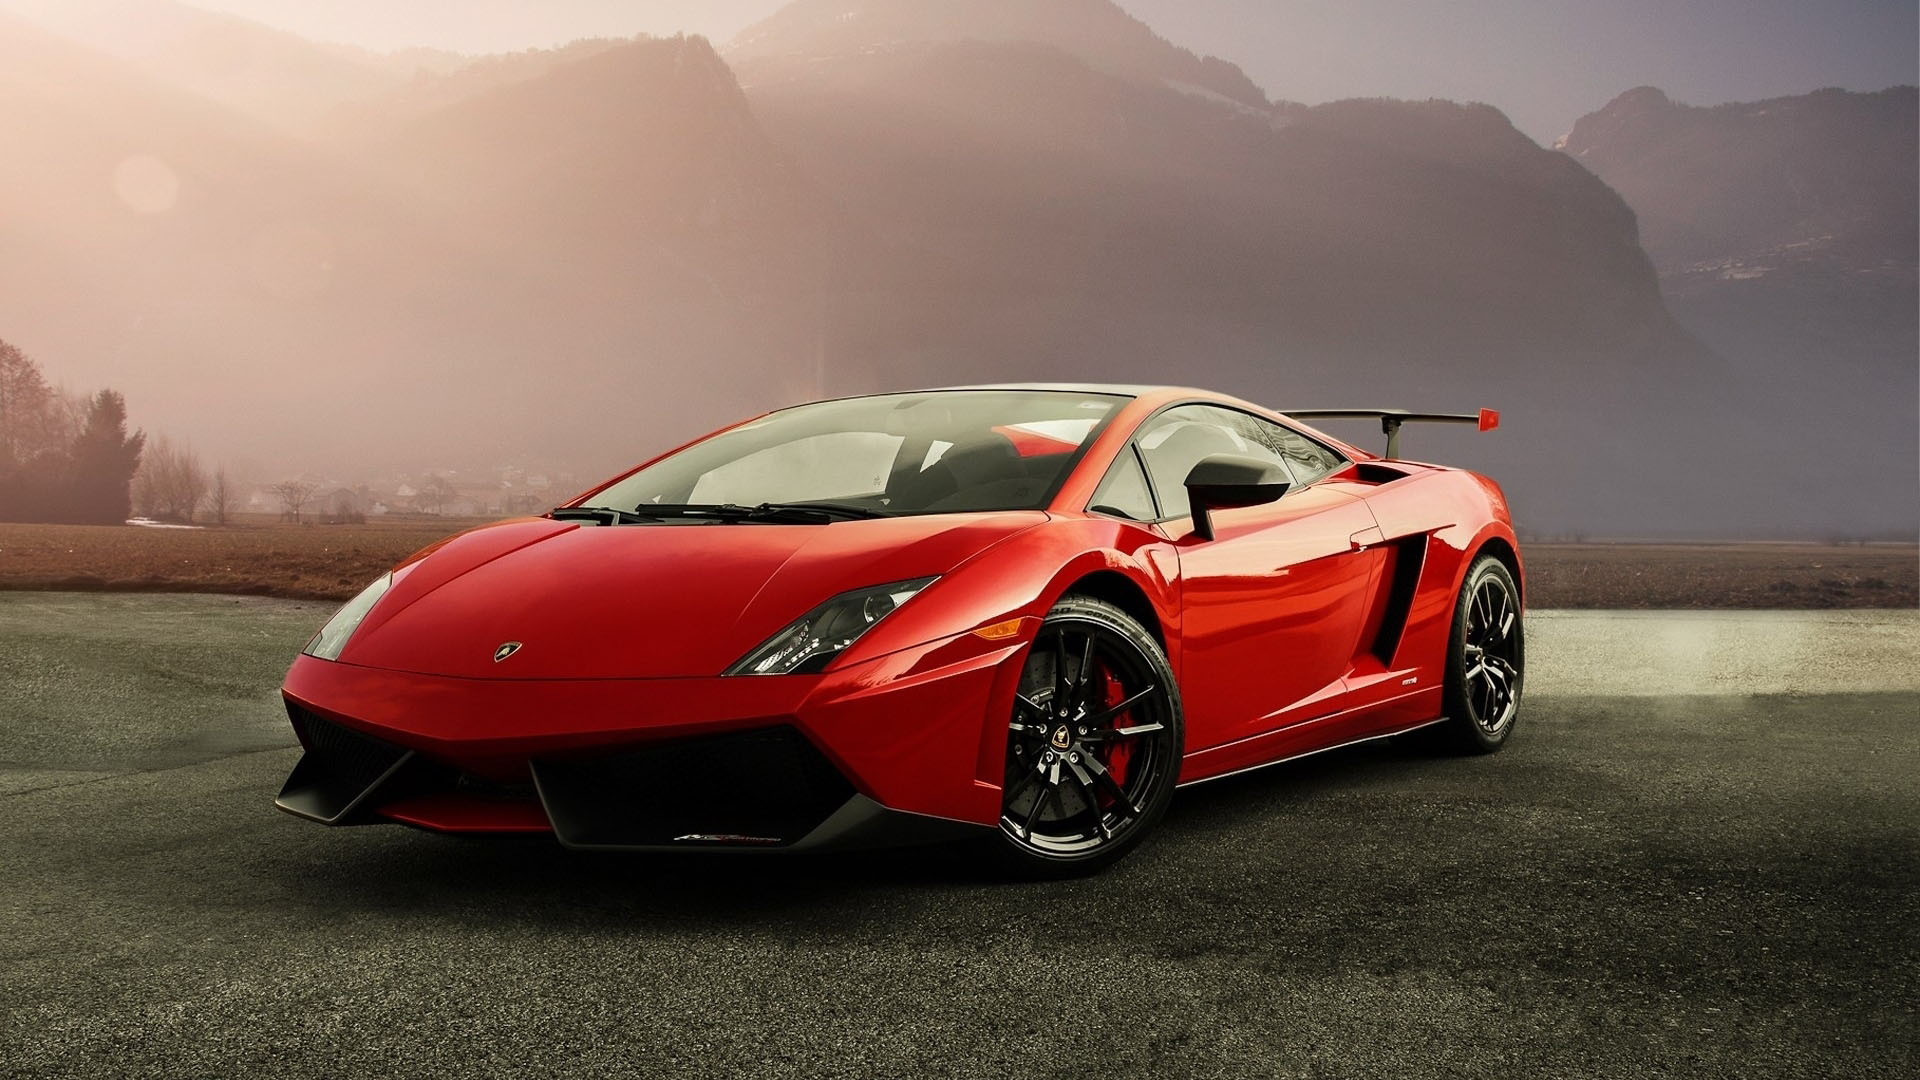 Dark Lamborghini 1080P, 2K, 4K, 5K HD wallpapers free download | Wallpaper  Flare